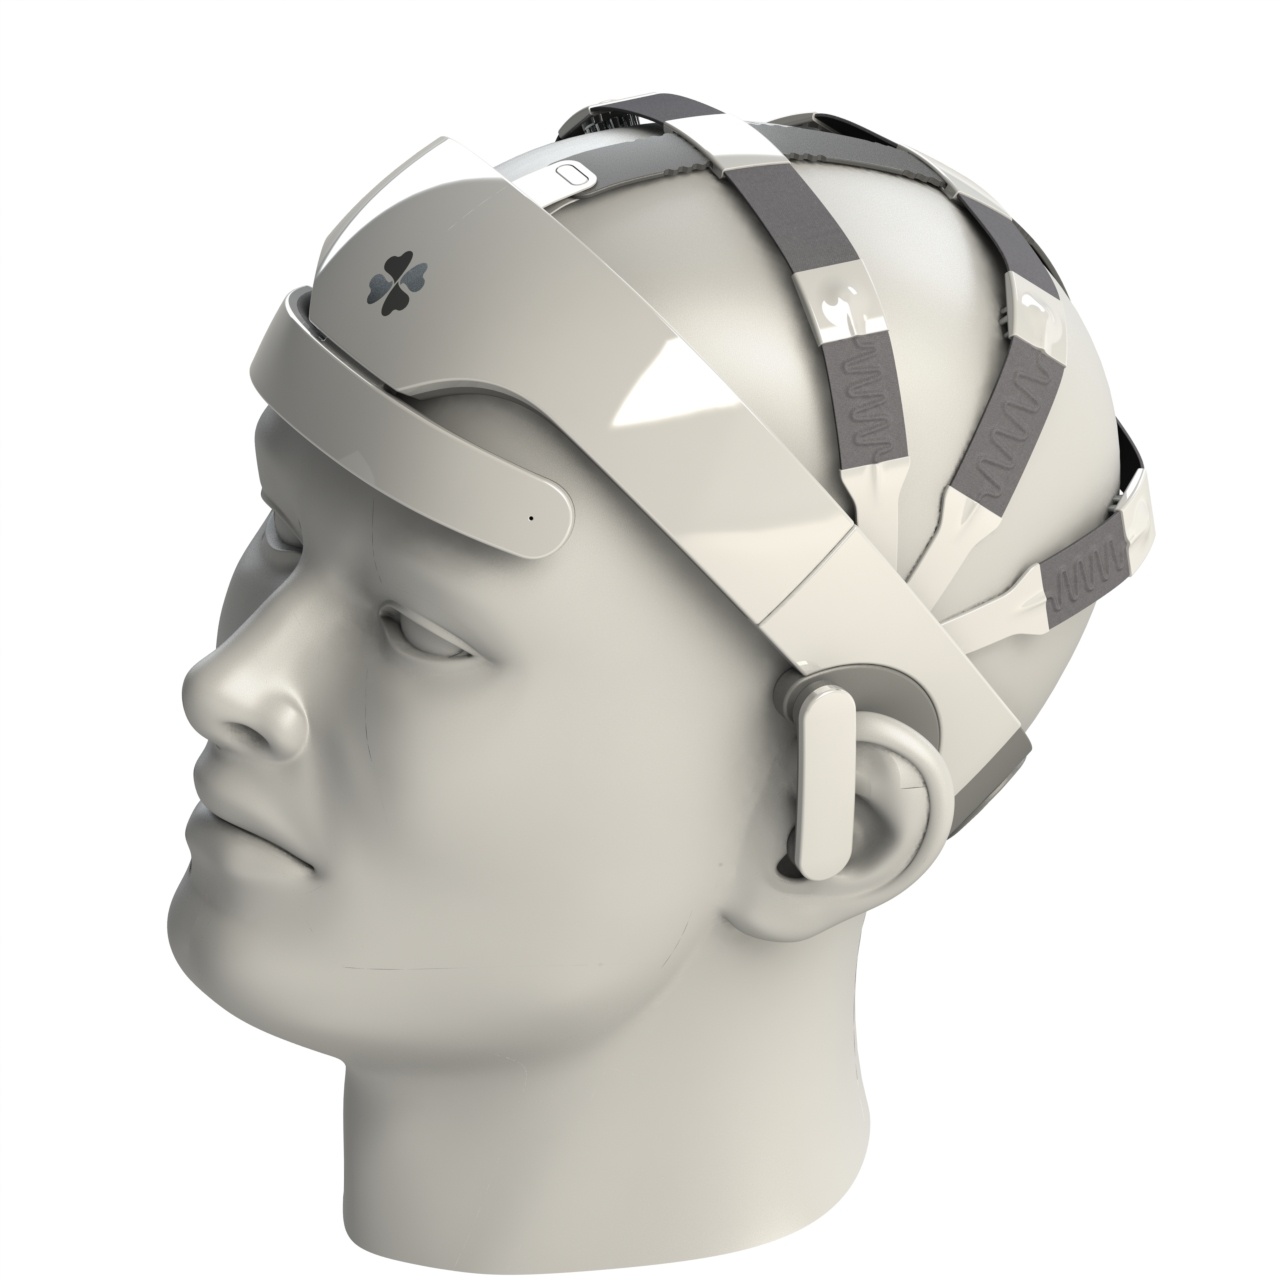 Шлем для ээг. Нейроинтерфейс bixxi. Шапочка для ЭЭГ. Шлем сетка для ЭЭГ.